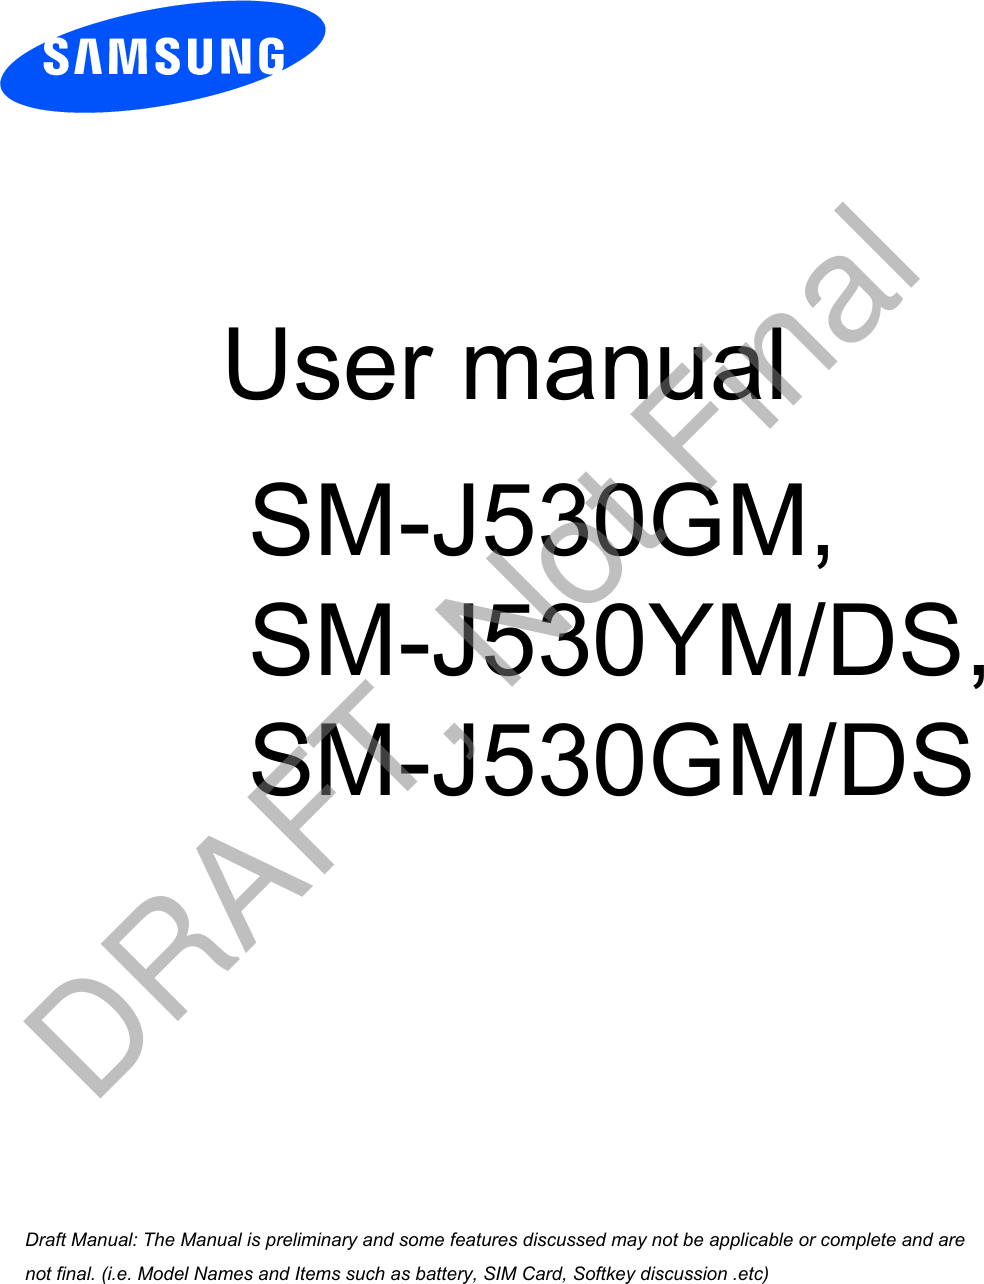  User manual SM-J530GM, SM-J530YM/DS, SM-J530GM/DSa ana  ana  na and  a dd a n  aa   and a n na  d a and   a a  ad  dn DRAFT, Not Final